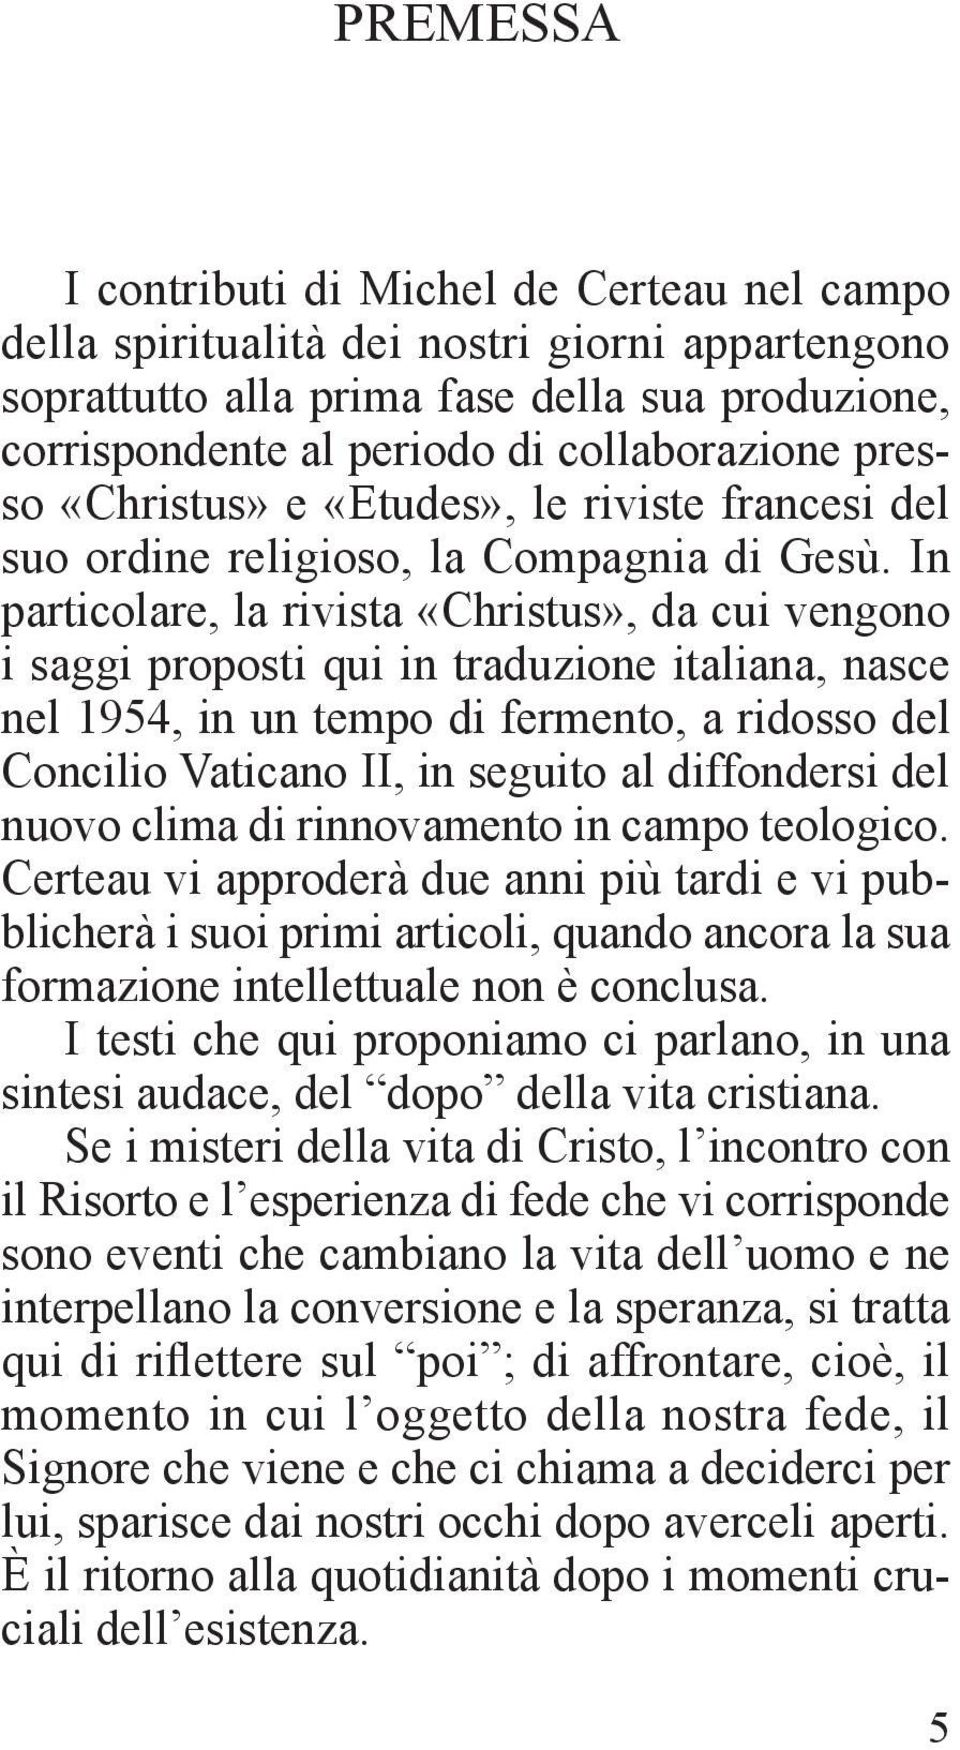 In particolare, la rivista «Christus», da cui vengono i saggi proposti qui in traduzione italiana, nasce nel 1954, in un tempo di fermento, a ridosso del Concilio Vaticano II, in seguito al